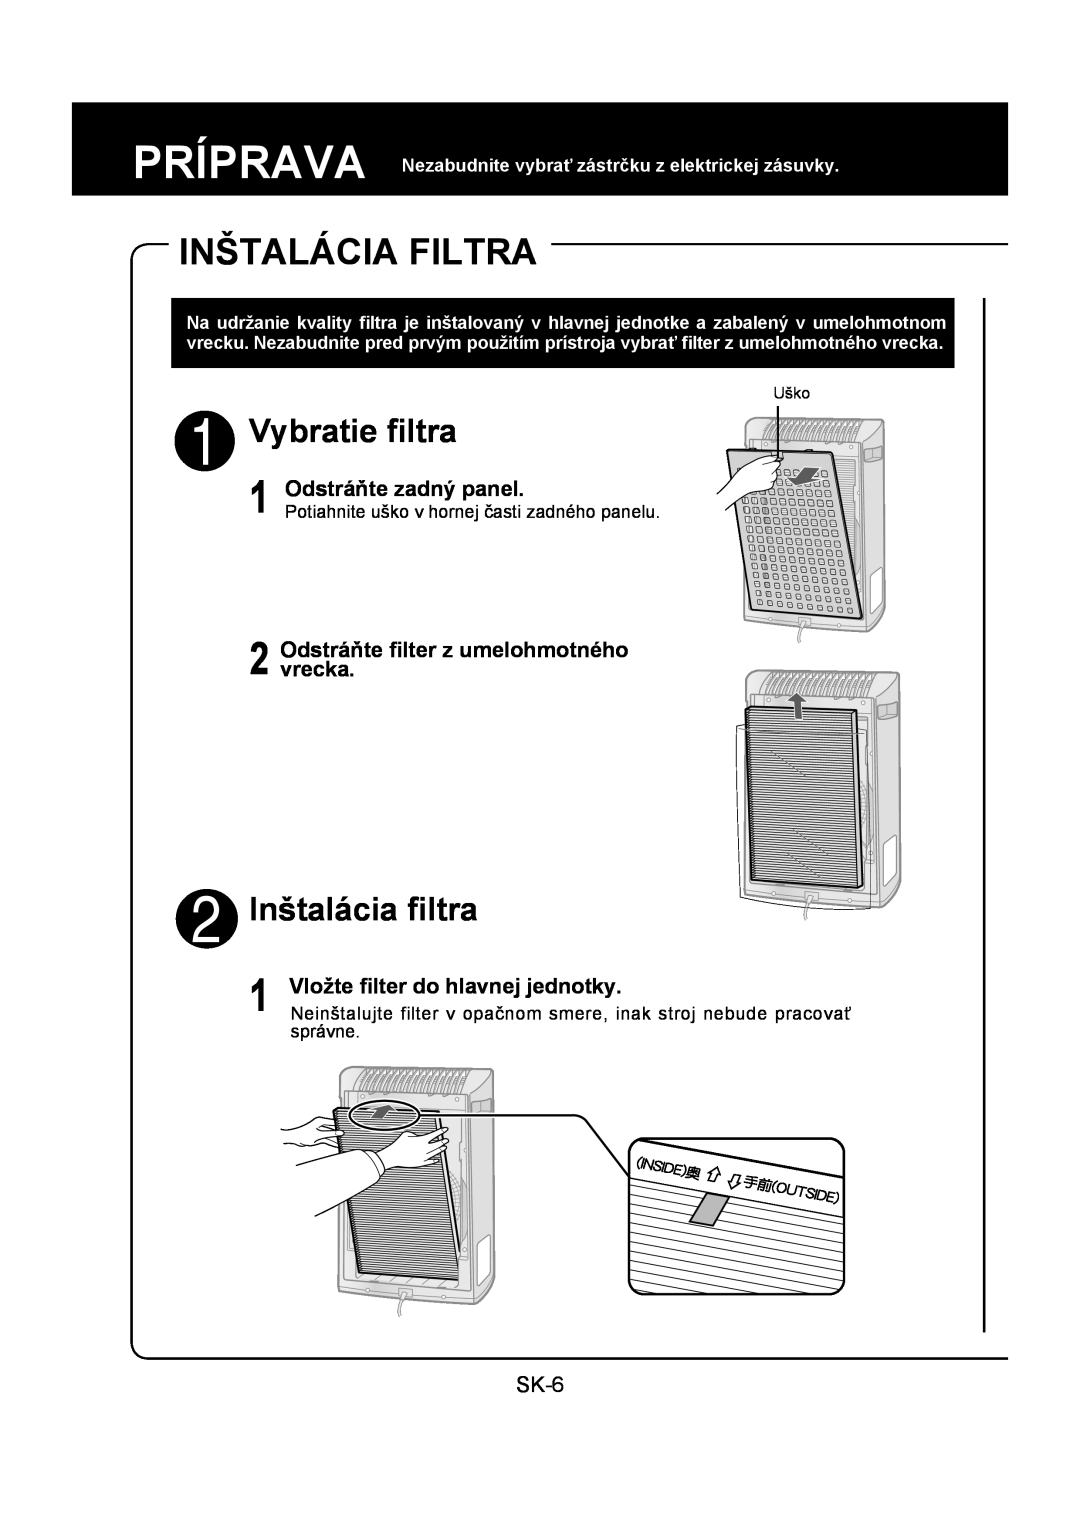 Sharp FU-Y30EU operation manual Inštalácia Filtra, Vybratie ﬁltra, Inštalácia ﬁltra, Odstráňte zadný panel, SK-6, Uško 